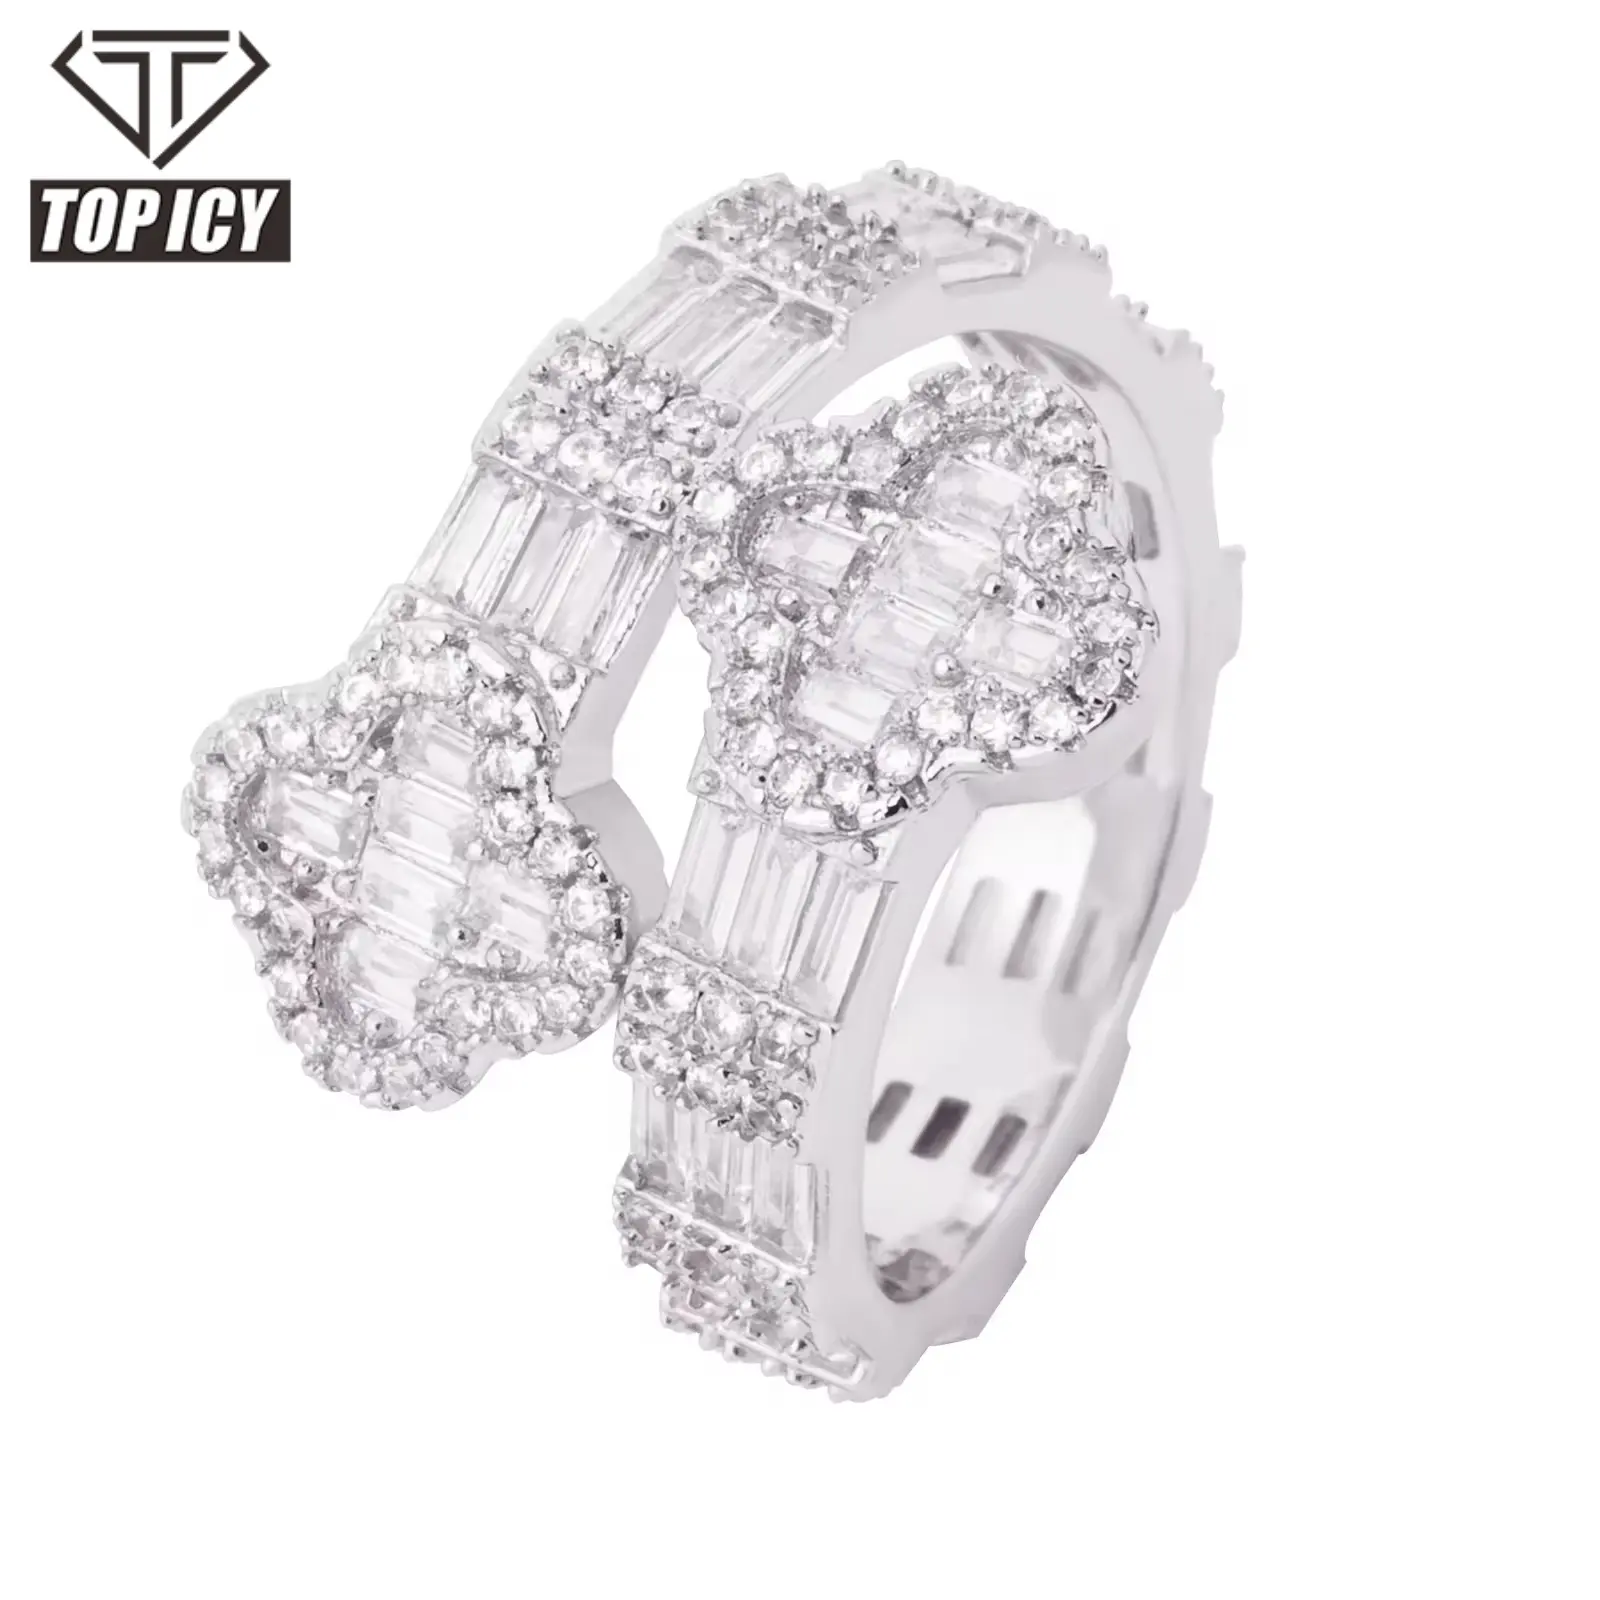 Новый Дизайн Сверкающее кольцо Лидер продаж циркон в форме клевера в стиле хип-хоп аксессуары для женщин и мужчин унисекс